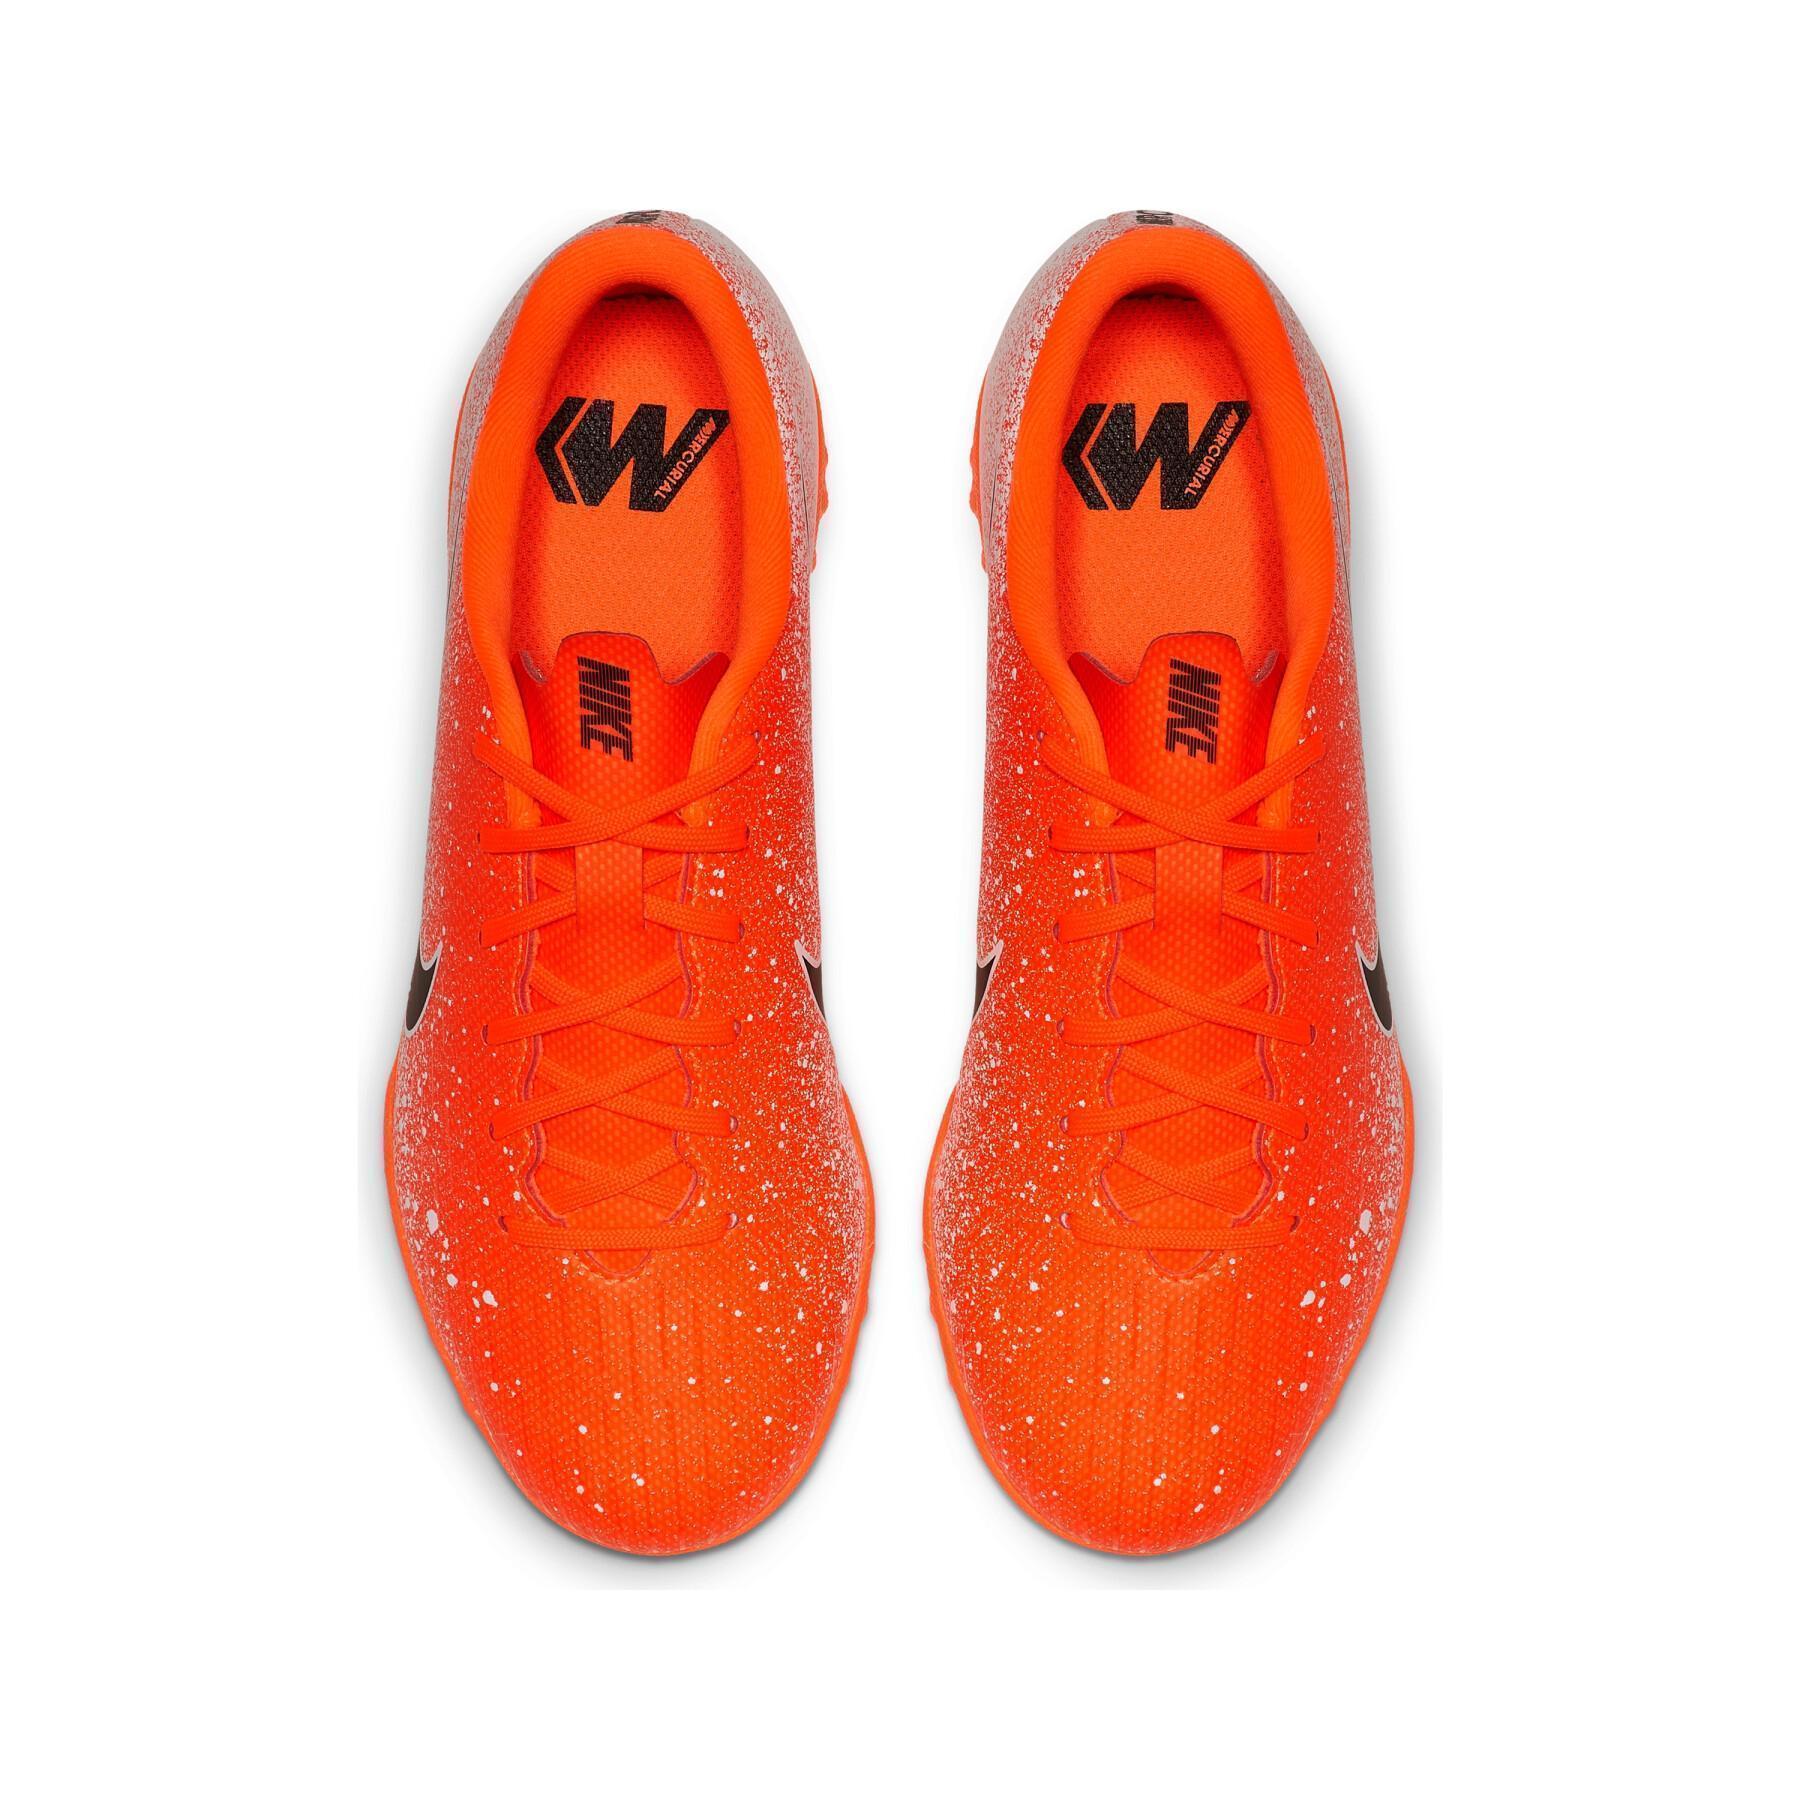 Buty dziecięce Nike Mercurial Vapor 12 Academy TF